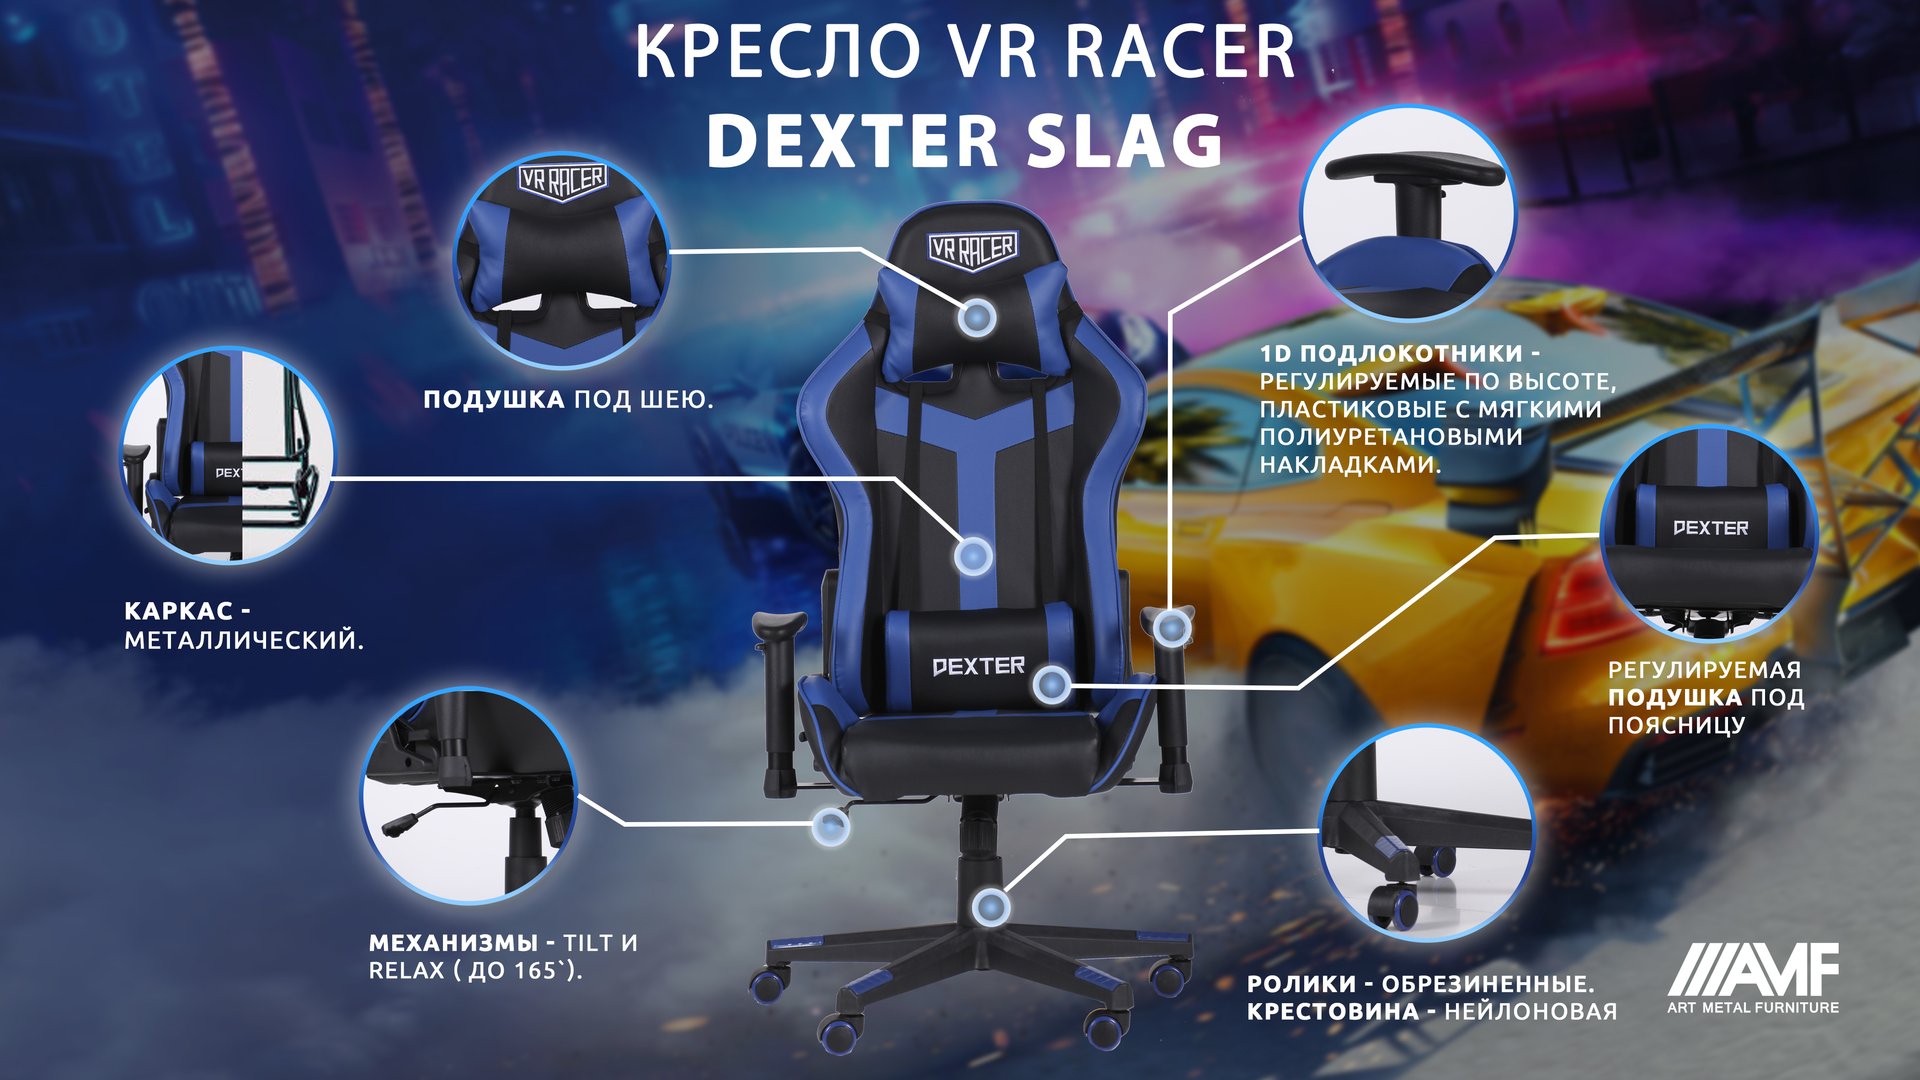 Кресло VR Racer Dexter Slag описание